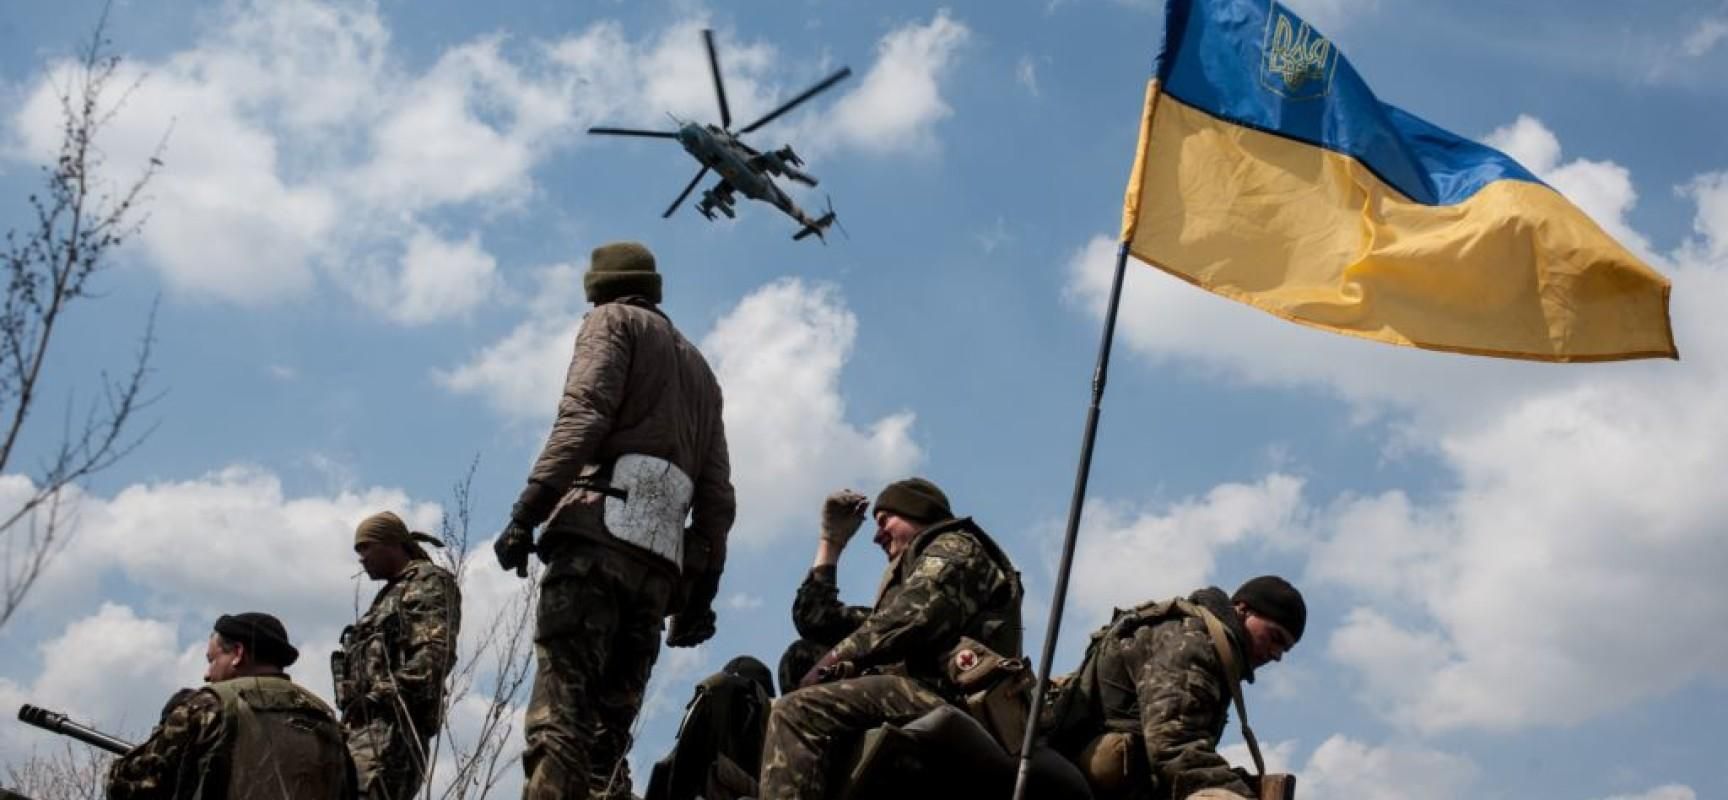 Вражеские ДРГ подходят вплотную к украинским позициям, несмотря на "хлебное перемирие"